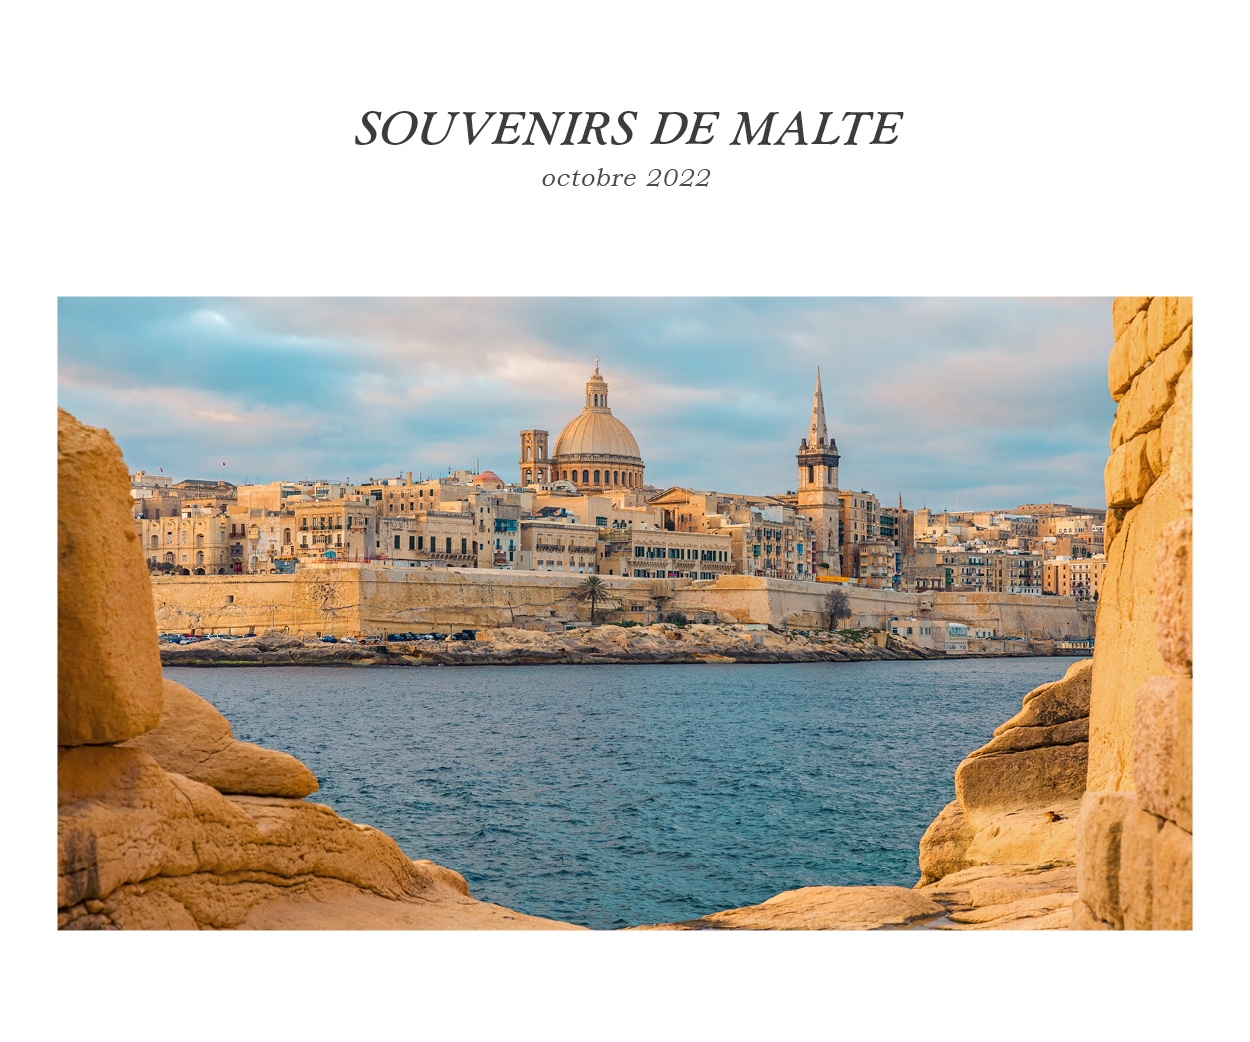 Rétrospective du voyage de Malte en octobre 2022 avec BK Organisation agence de voyage de luxe